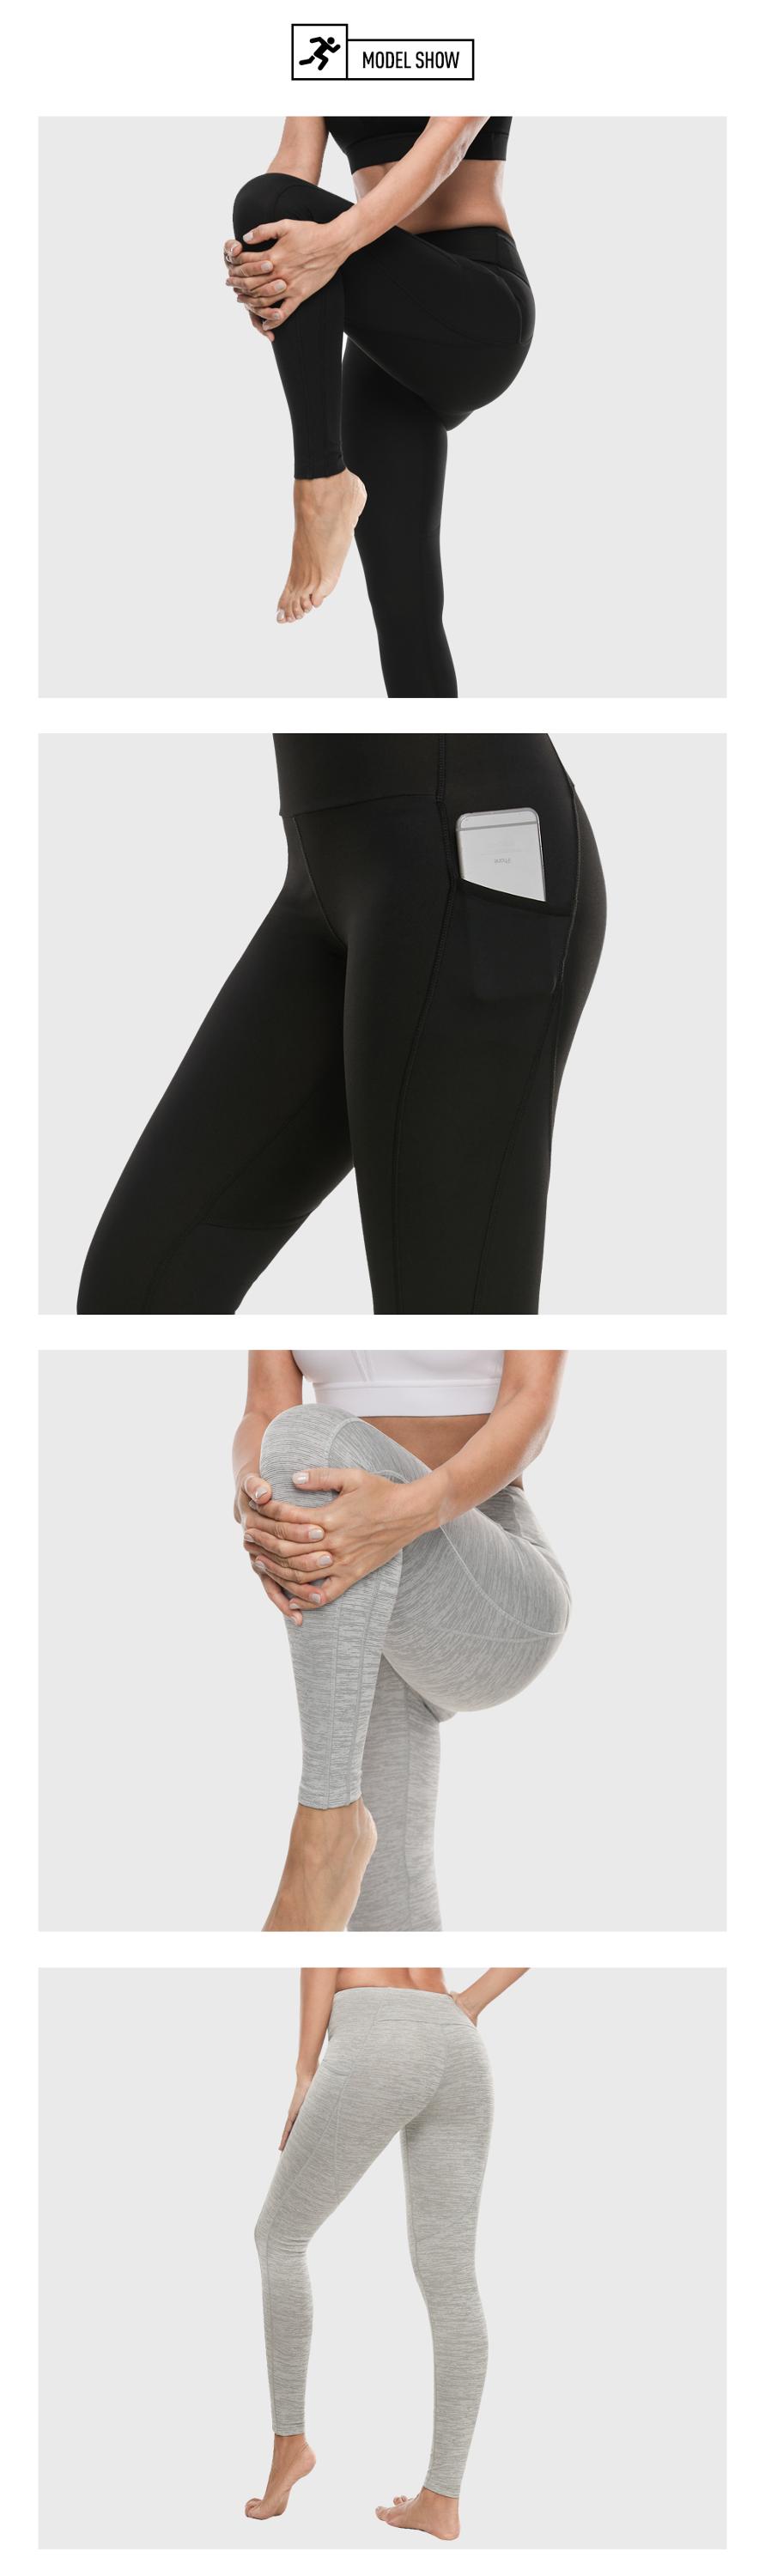 2019 wholesale high-waisted fitness black women's leggings